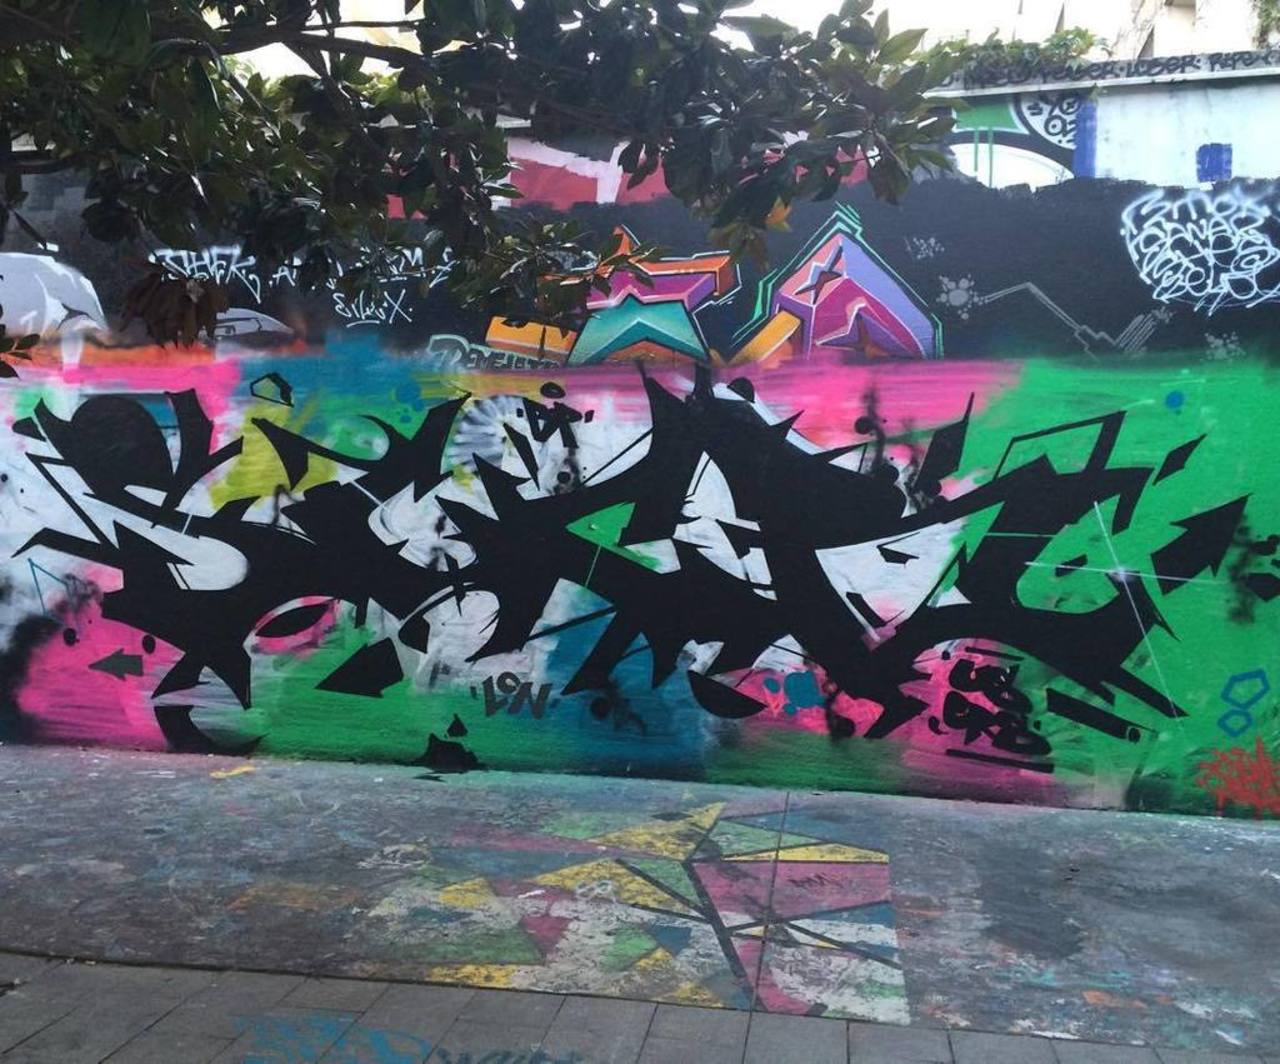 via #insta_fdy "http://ift.tt/1WrmiH3" #graffiti #streetart http://t.co/cxsgUMVWP0